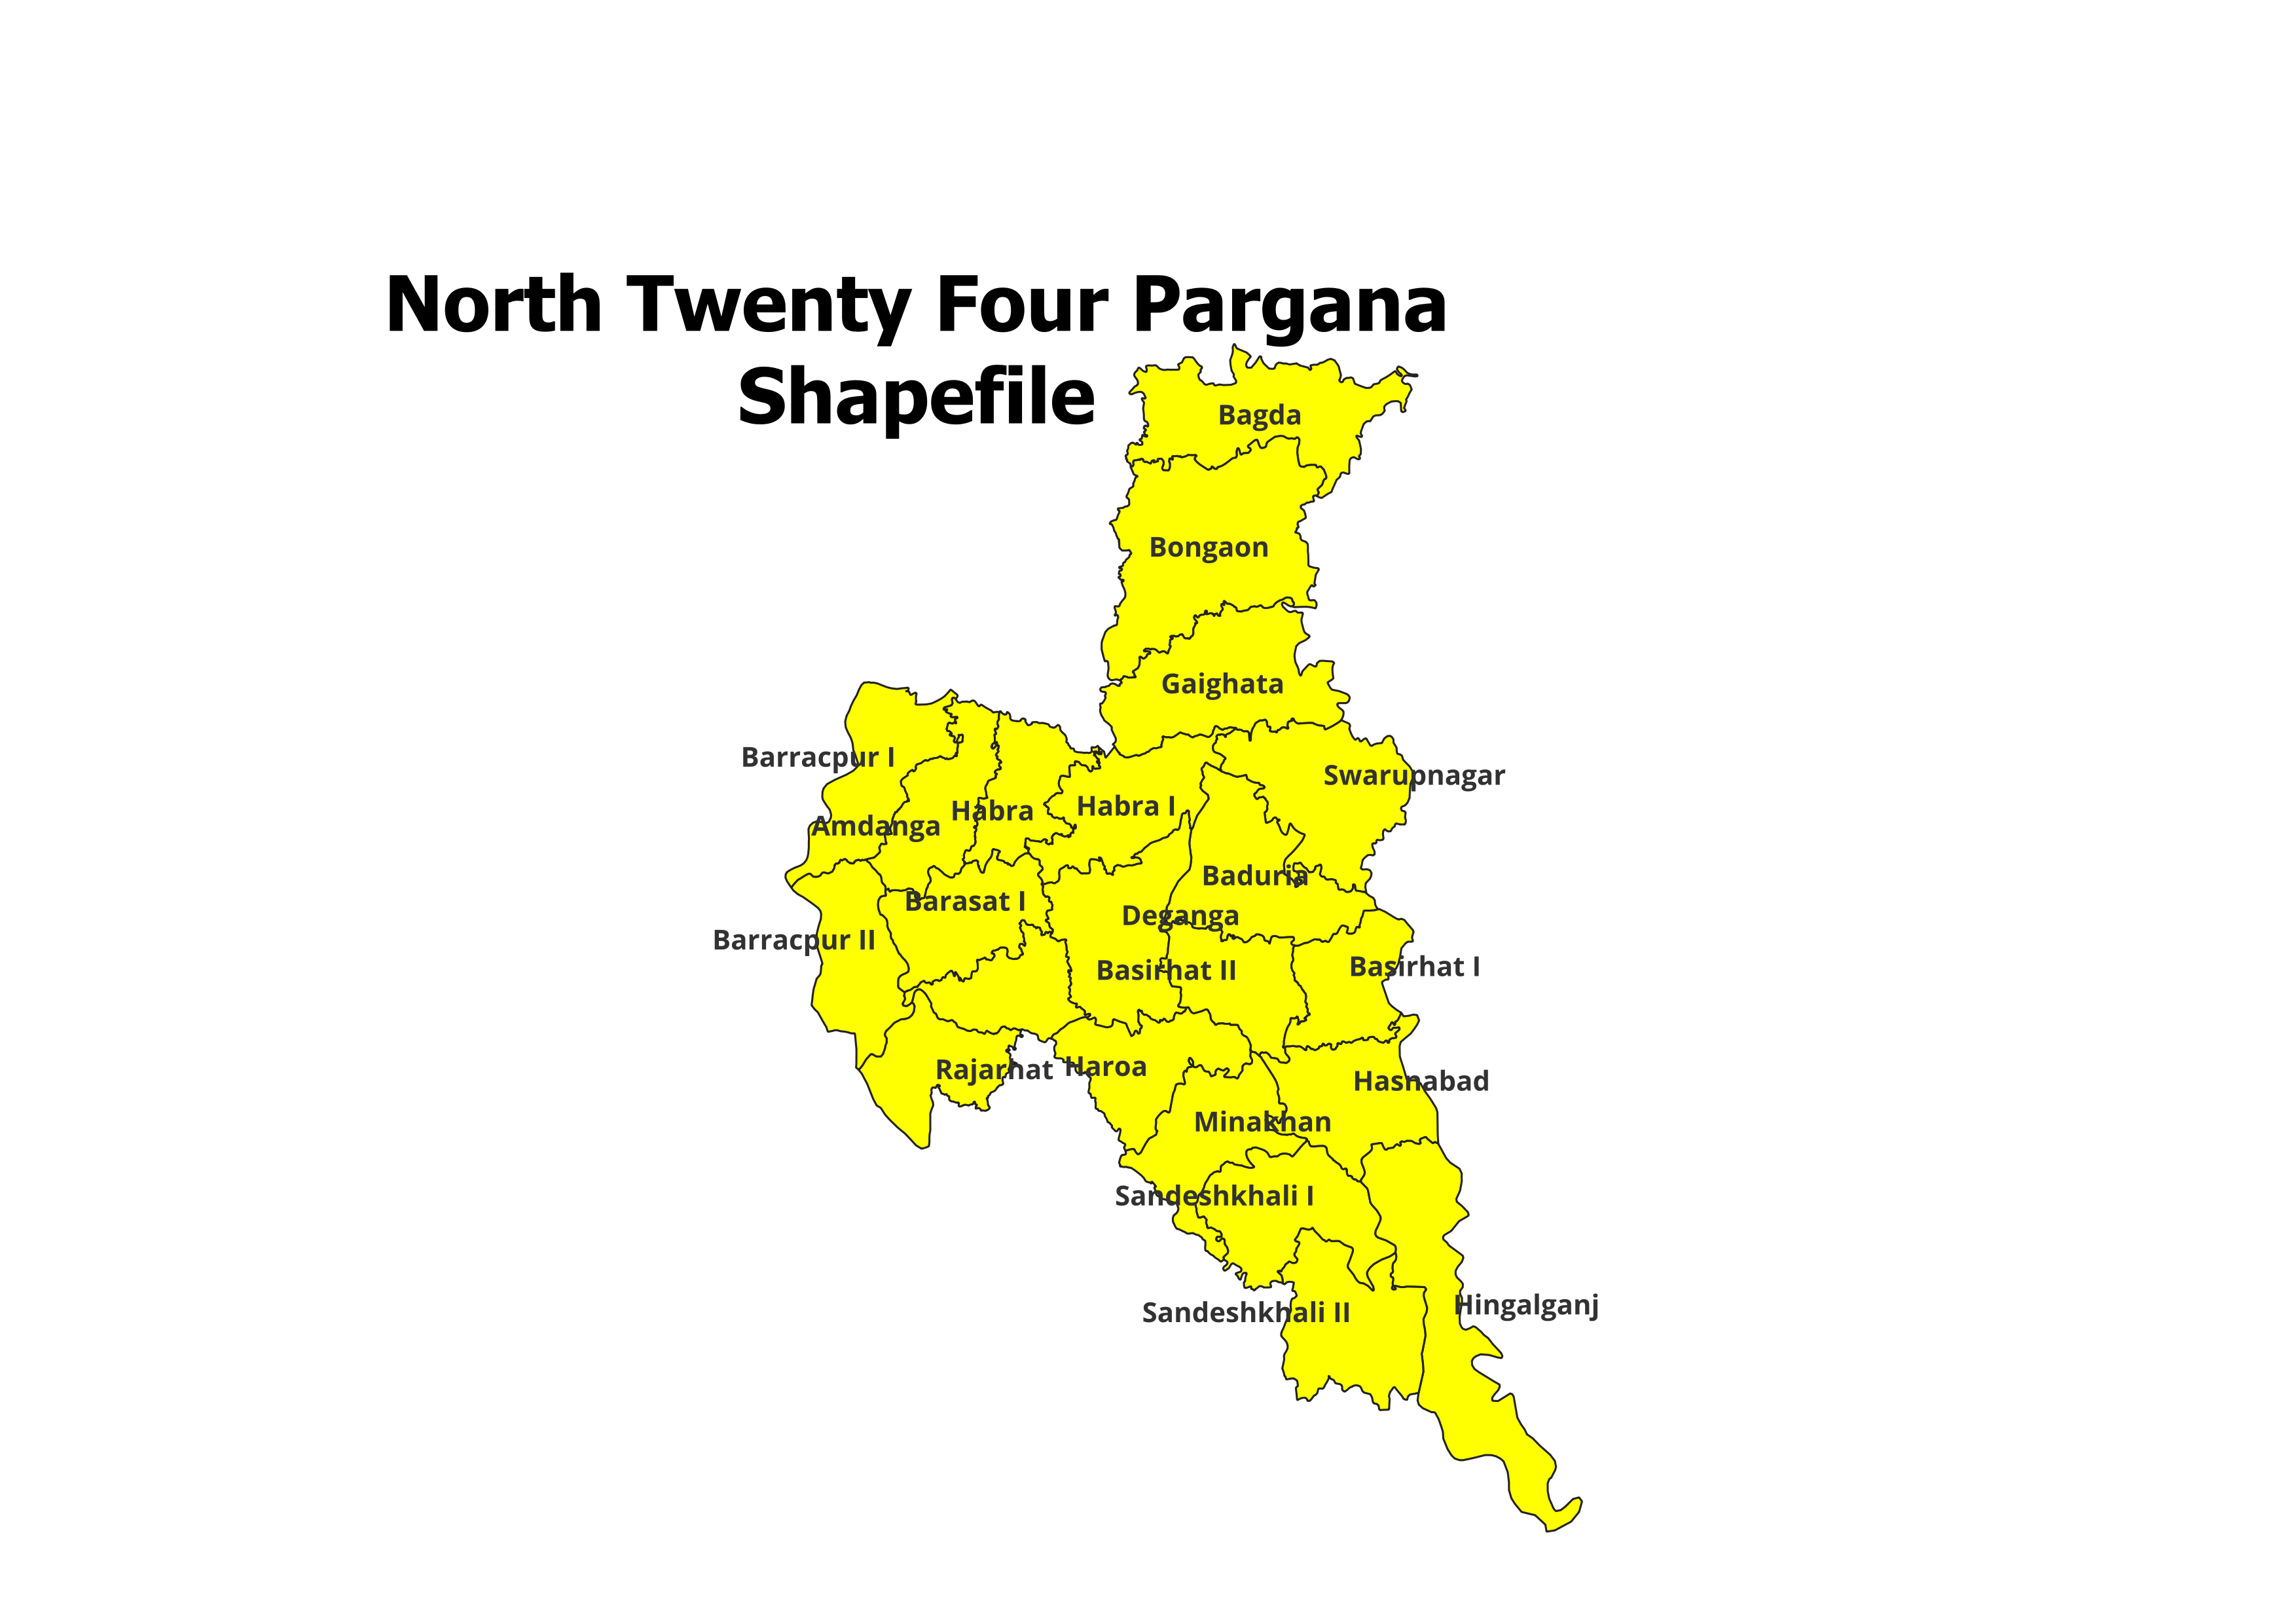 North Twenty Four Pargana Blocks shapefile